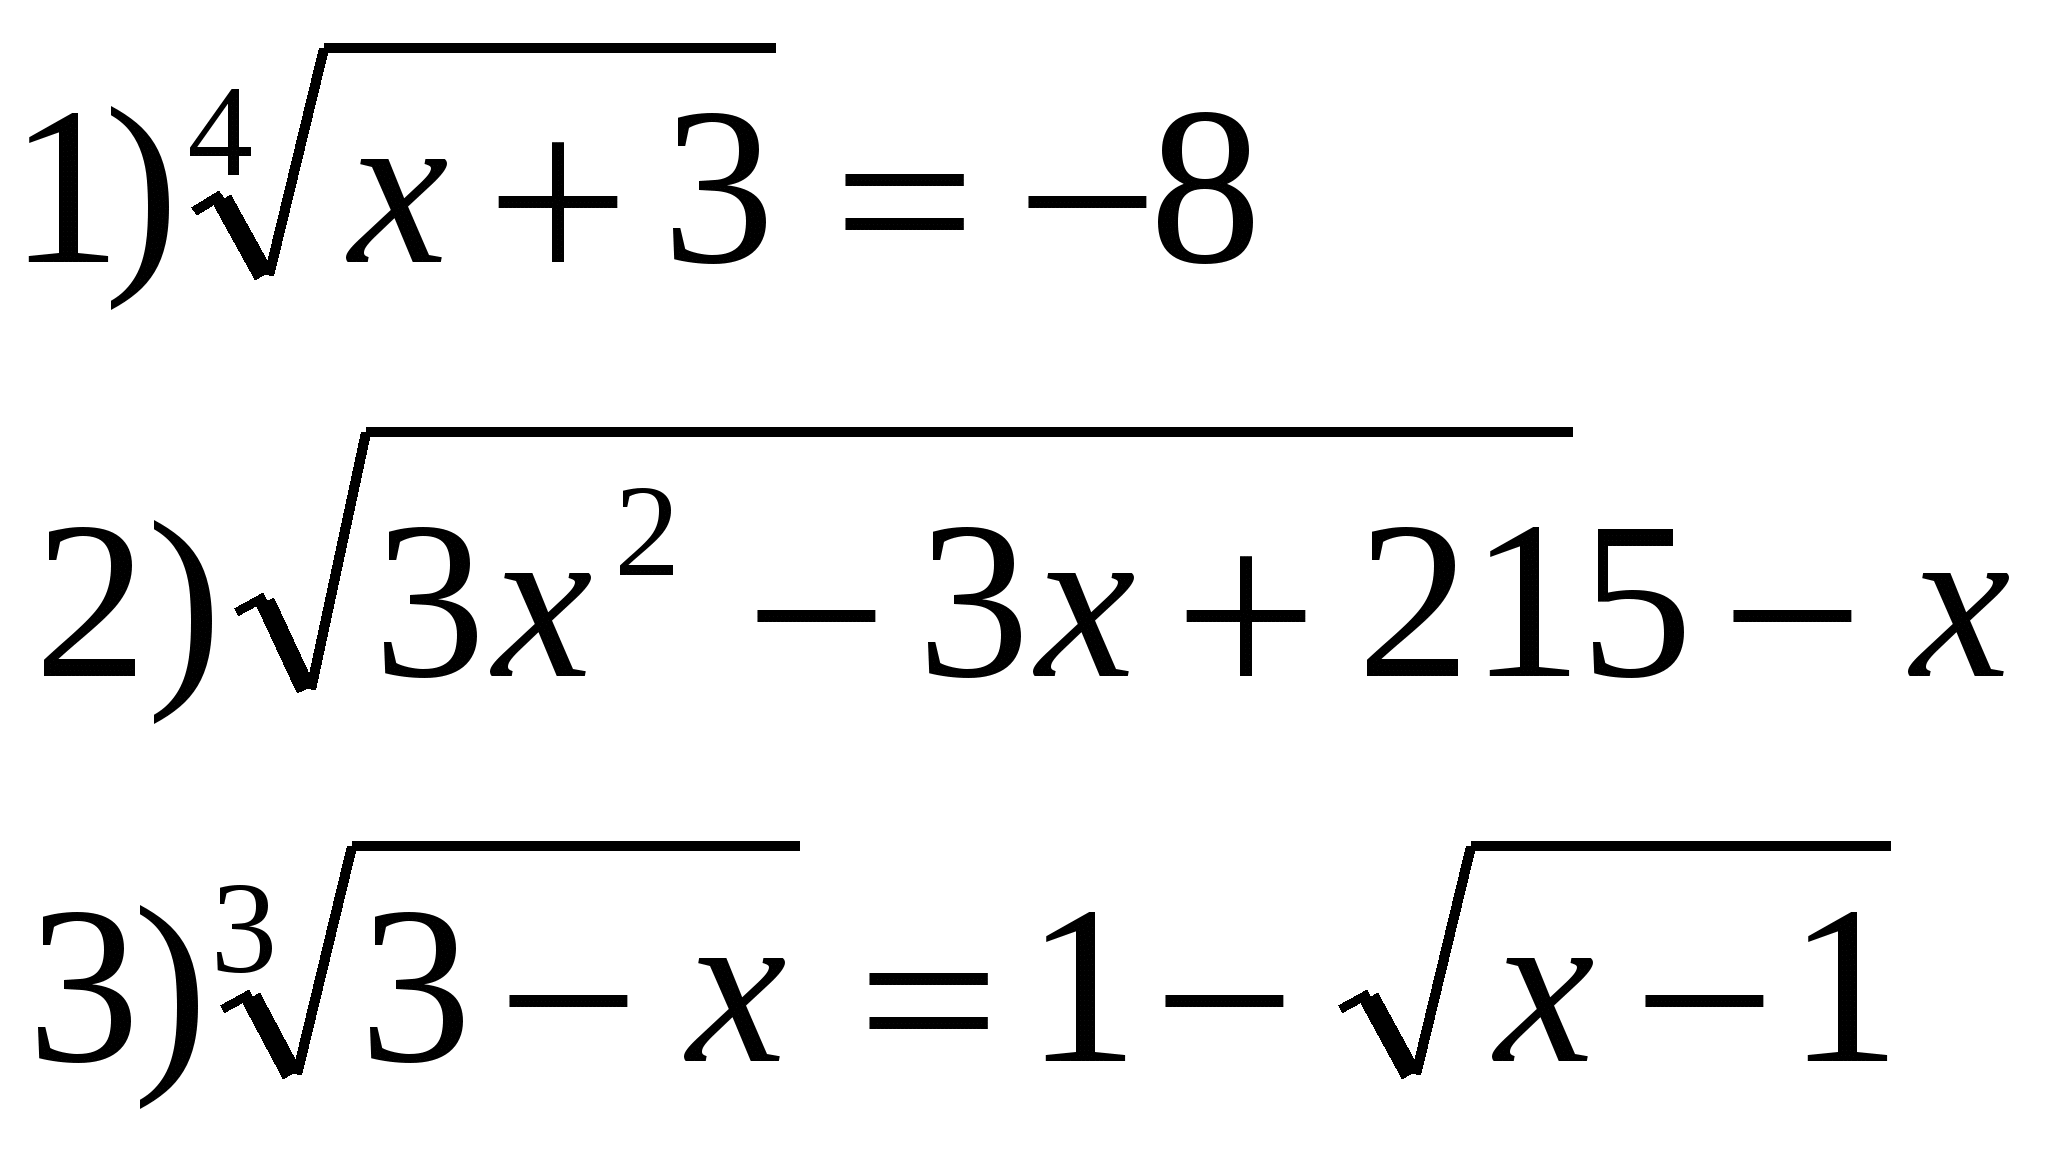 Урок по темеКонспект по алгебре иначалу анализа на тему Иррациональные уравнения (11 класс)